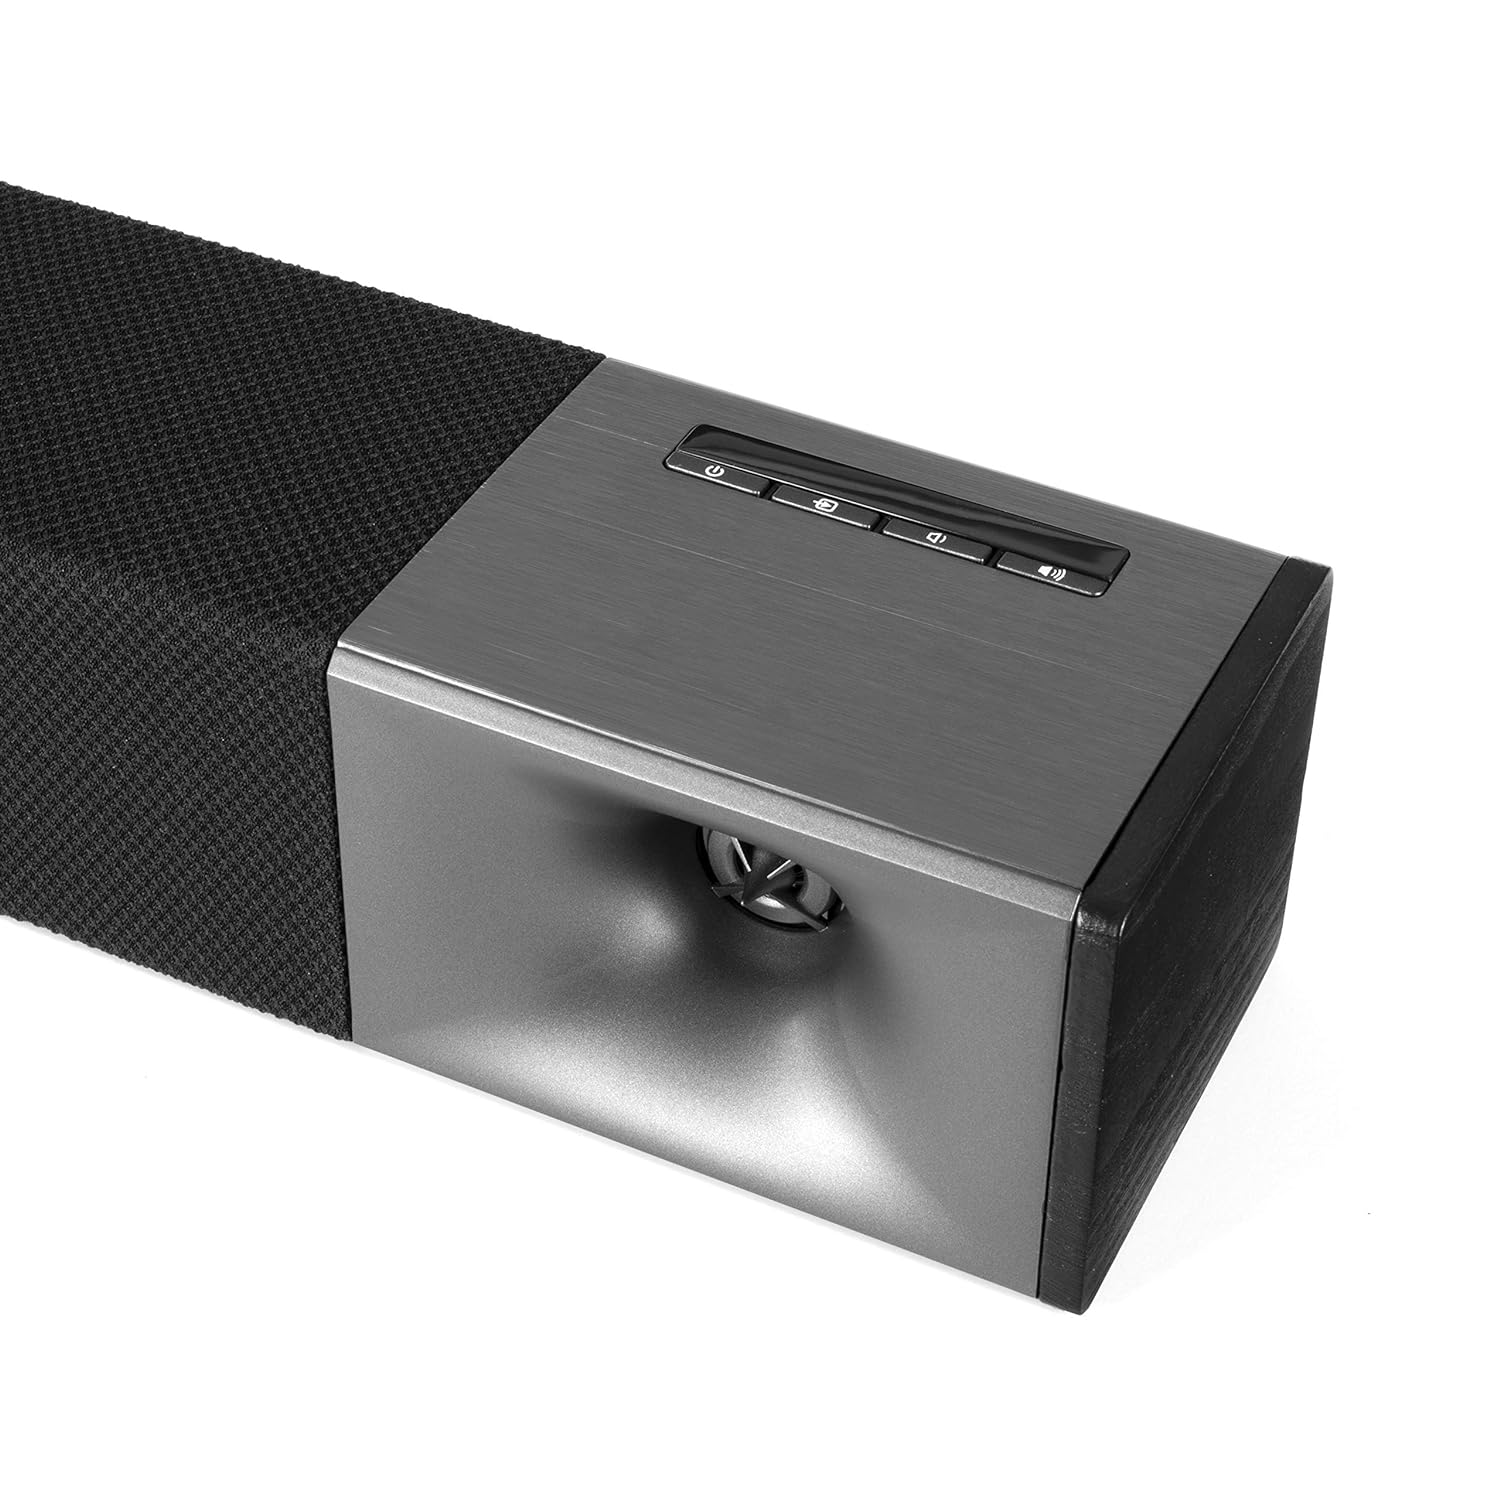 Klipsch Cinema 600 5.1 Sound Bar Surround Sound System with Discrete Surround 3 Speakers